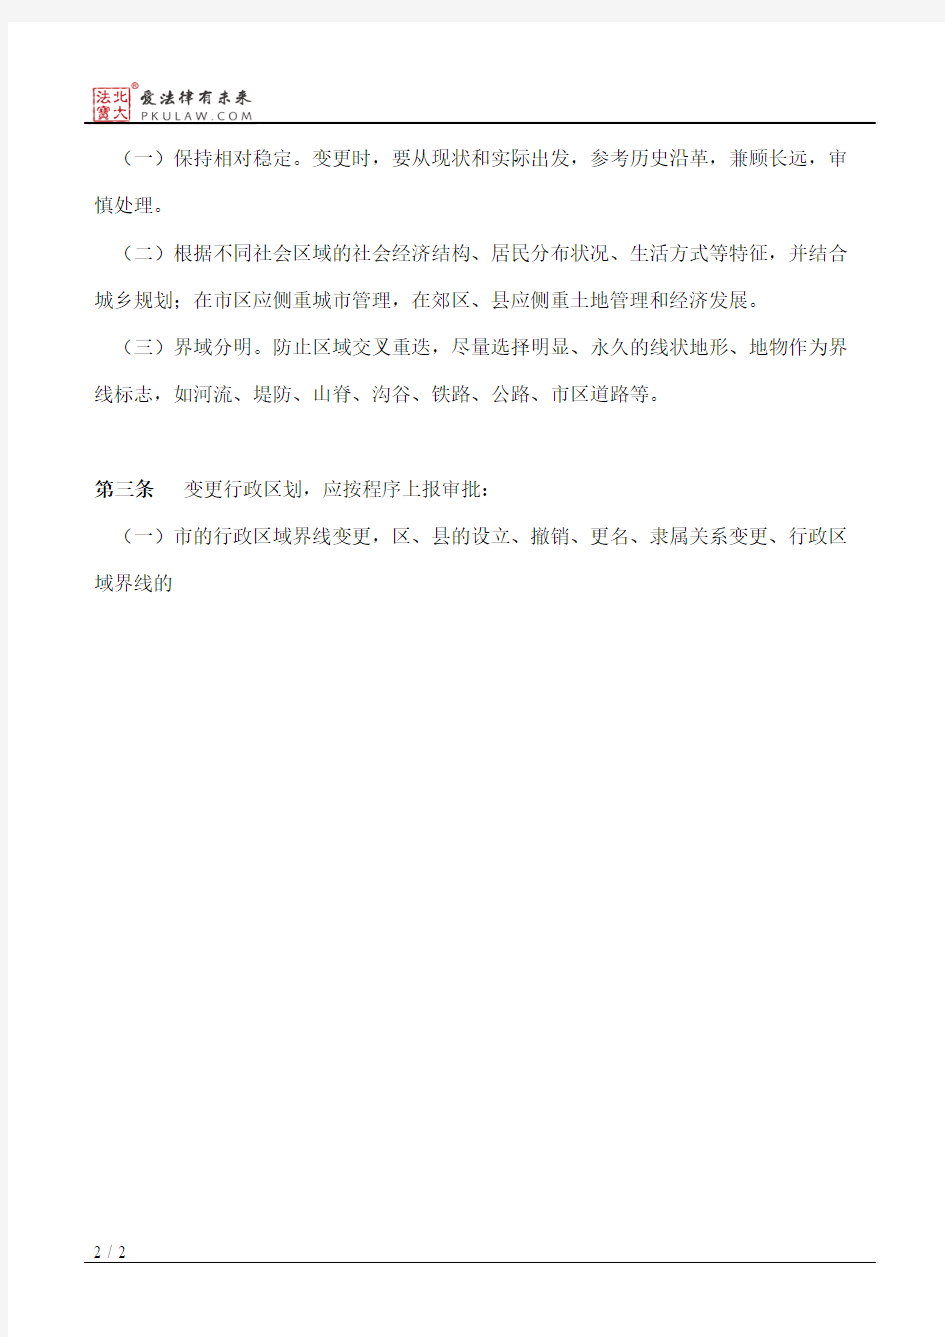 天津市人民政府关于颁布《天津市行政区划管理办法》的通知